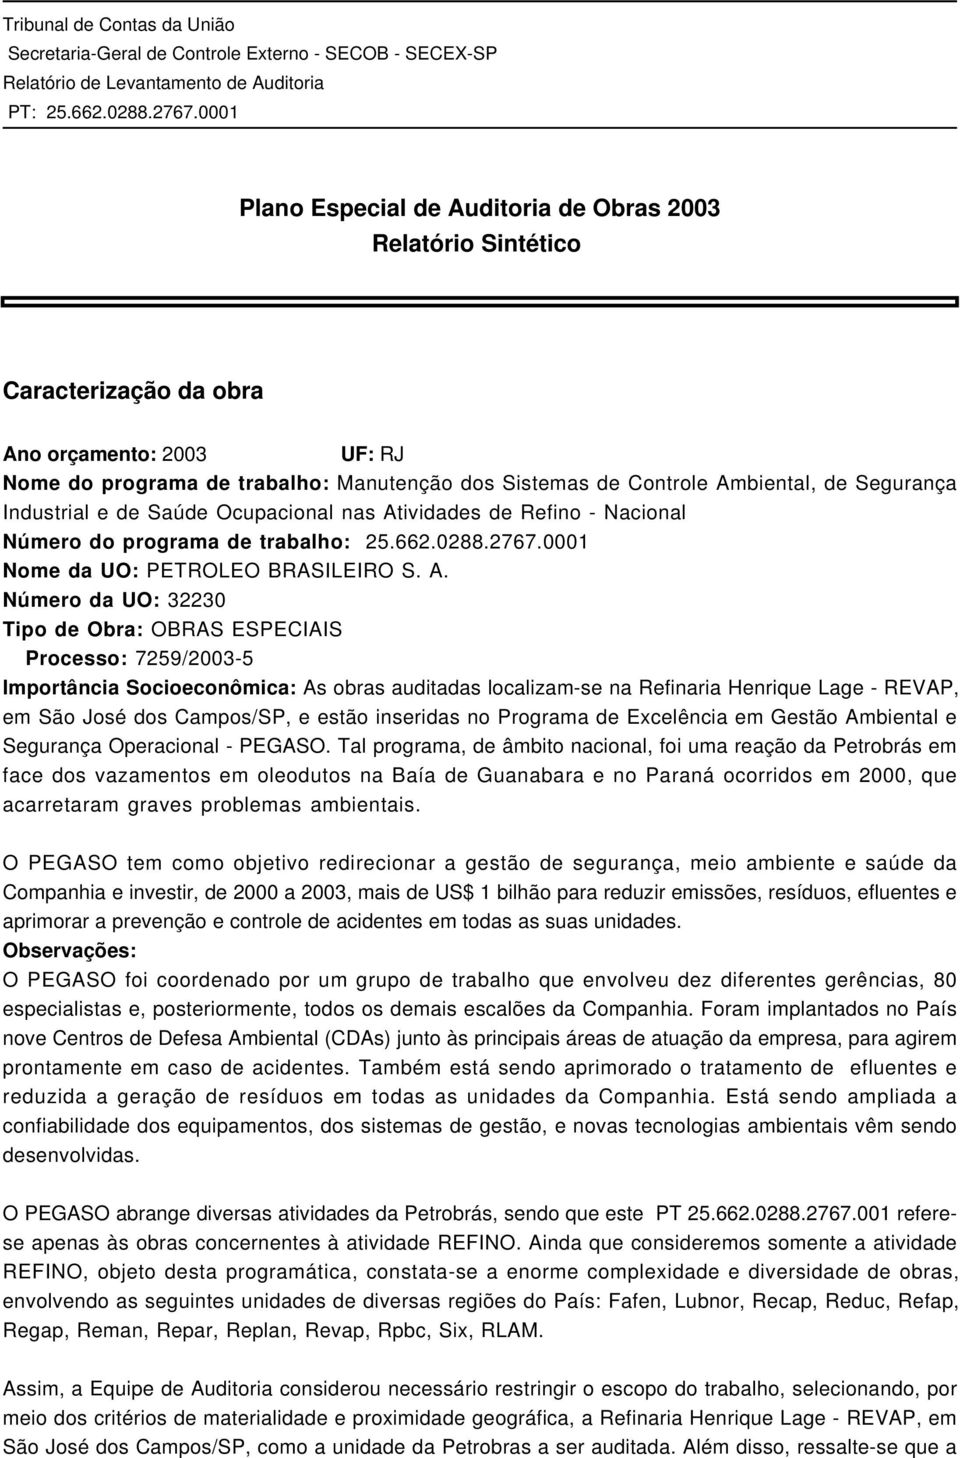 ividades de Refino - Nacional Número do programa de trabalho: 25.662.0288.2767.0001 Nome da UO: PETROLEO BRASILEIRO S. A.